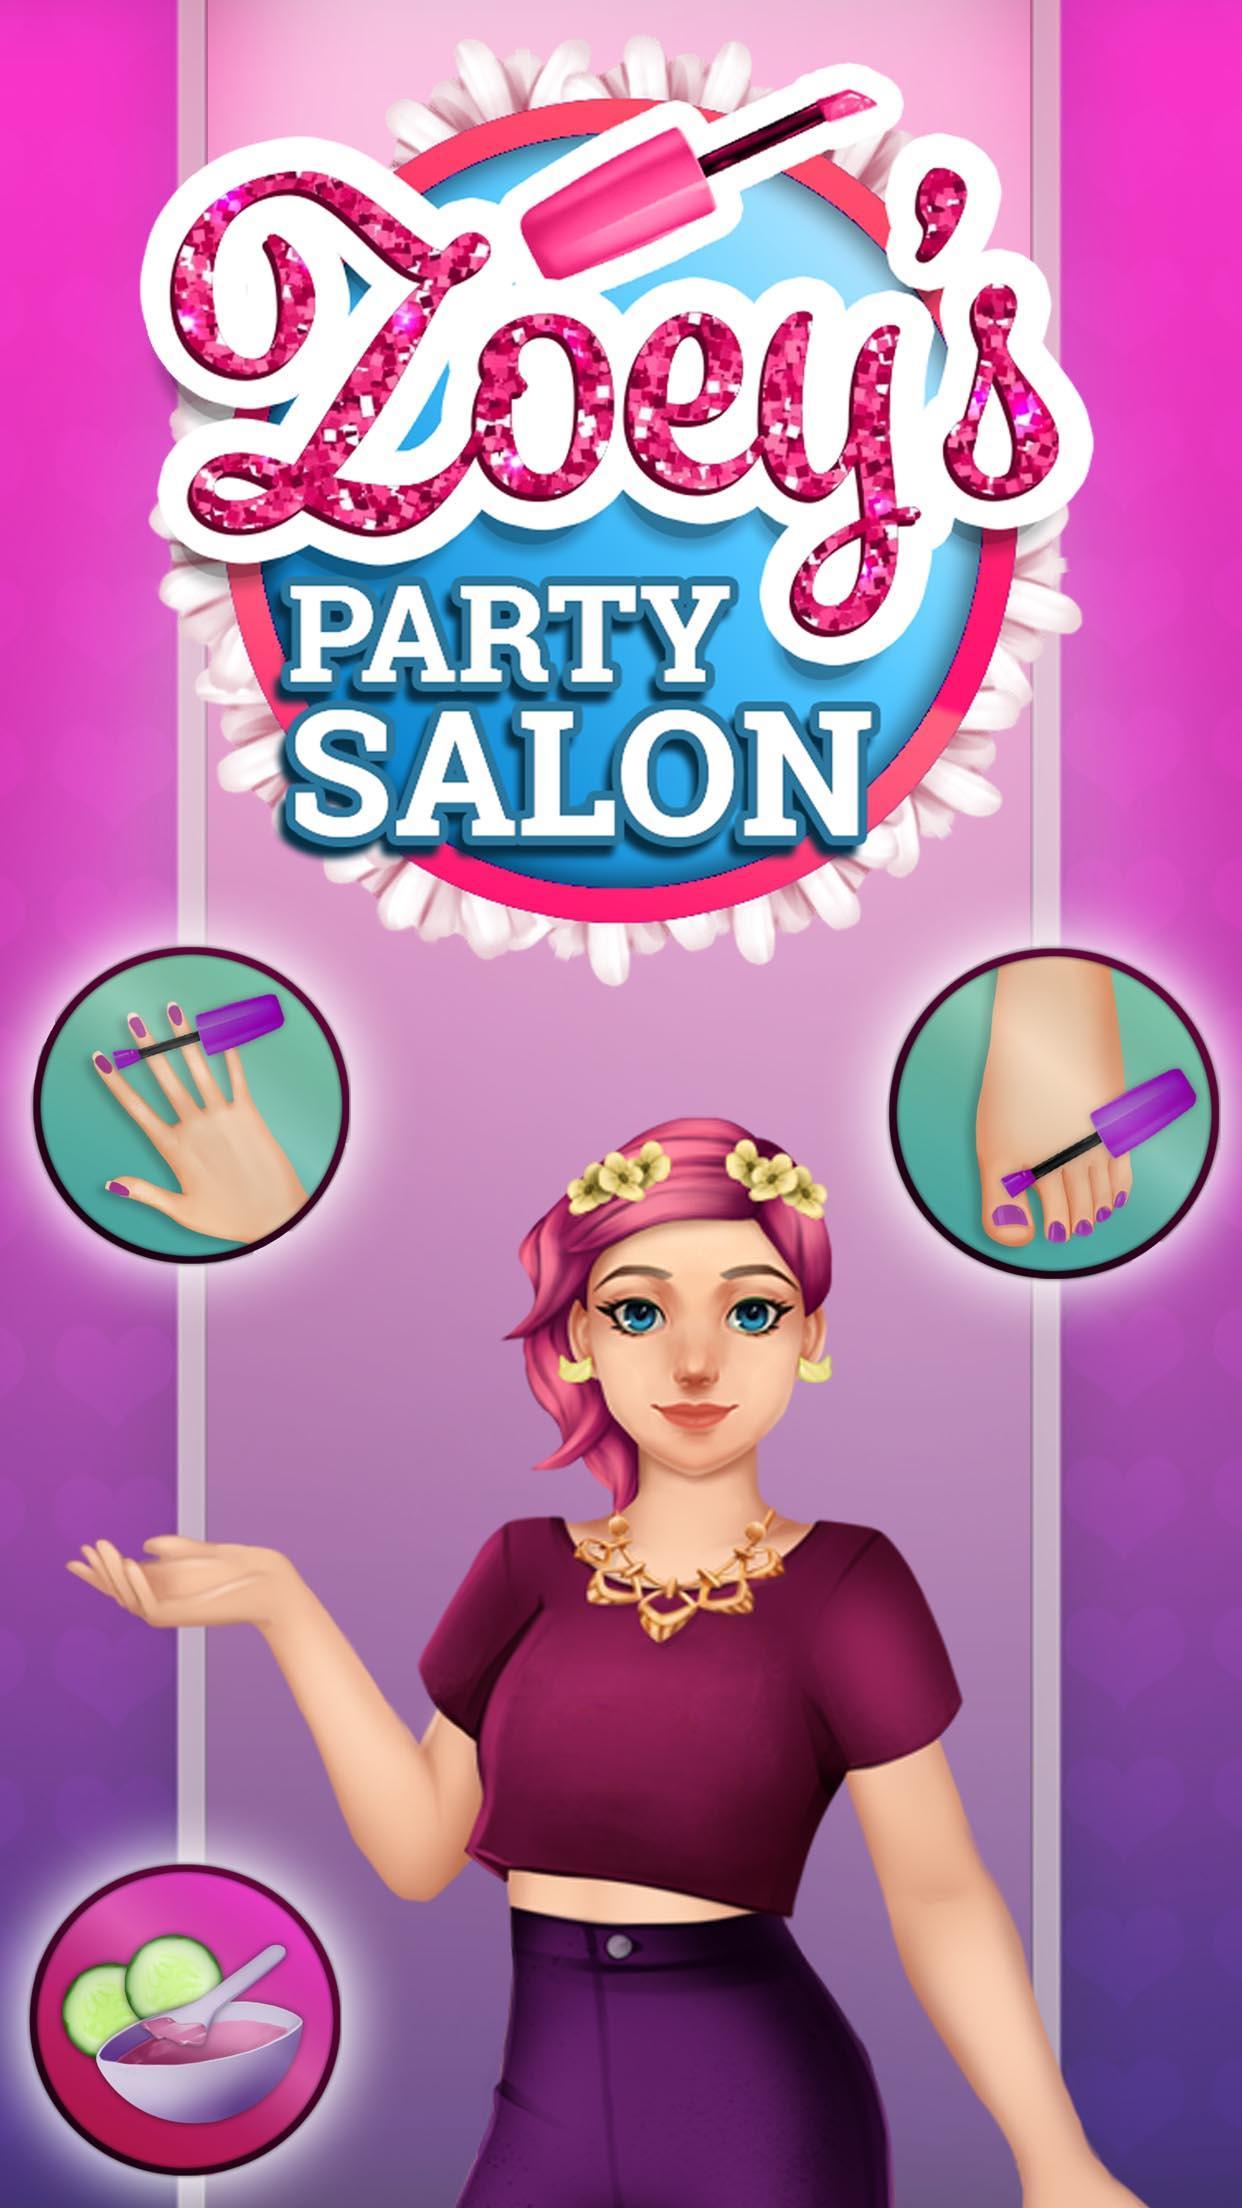 Screenshot 1 of Zoey's Party Salon - Nails, Makeup, Spa at Dress Up 1.0.23